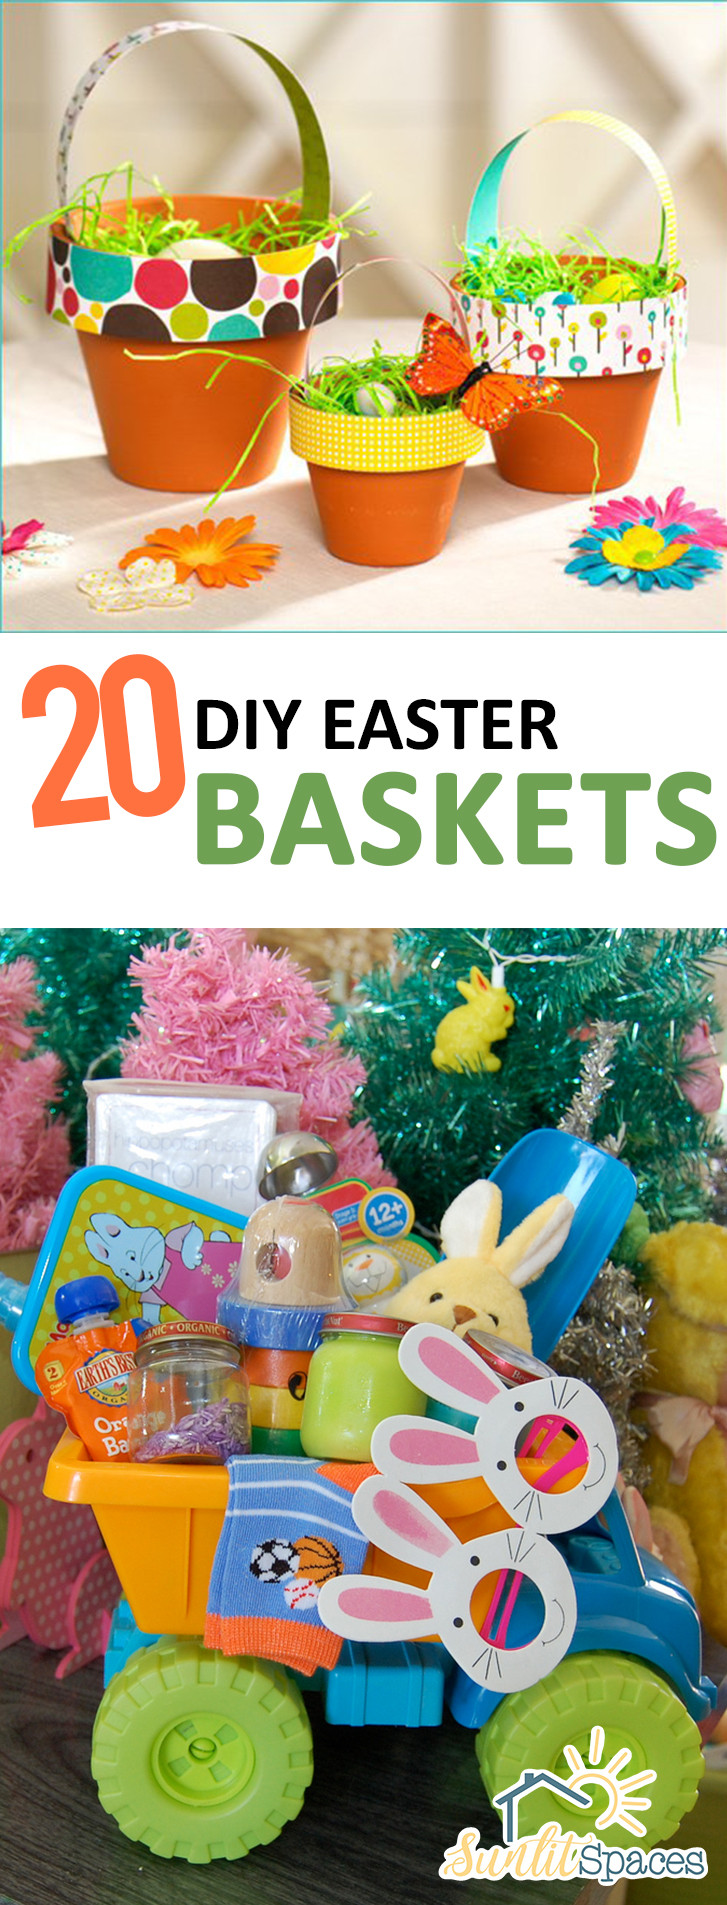 DIY Easter Baskets For Kids
 20 DIY Easter Baskets – Sunlit Spaces